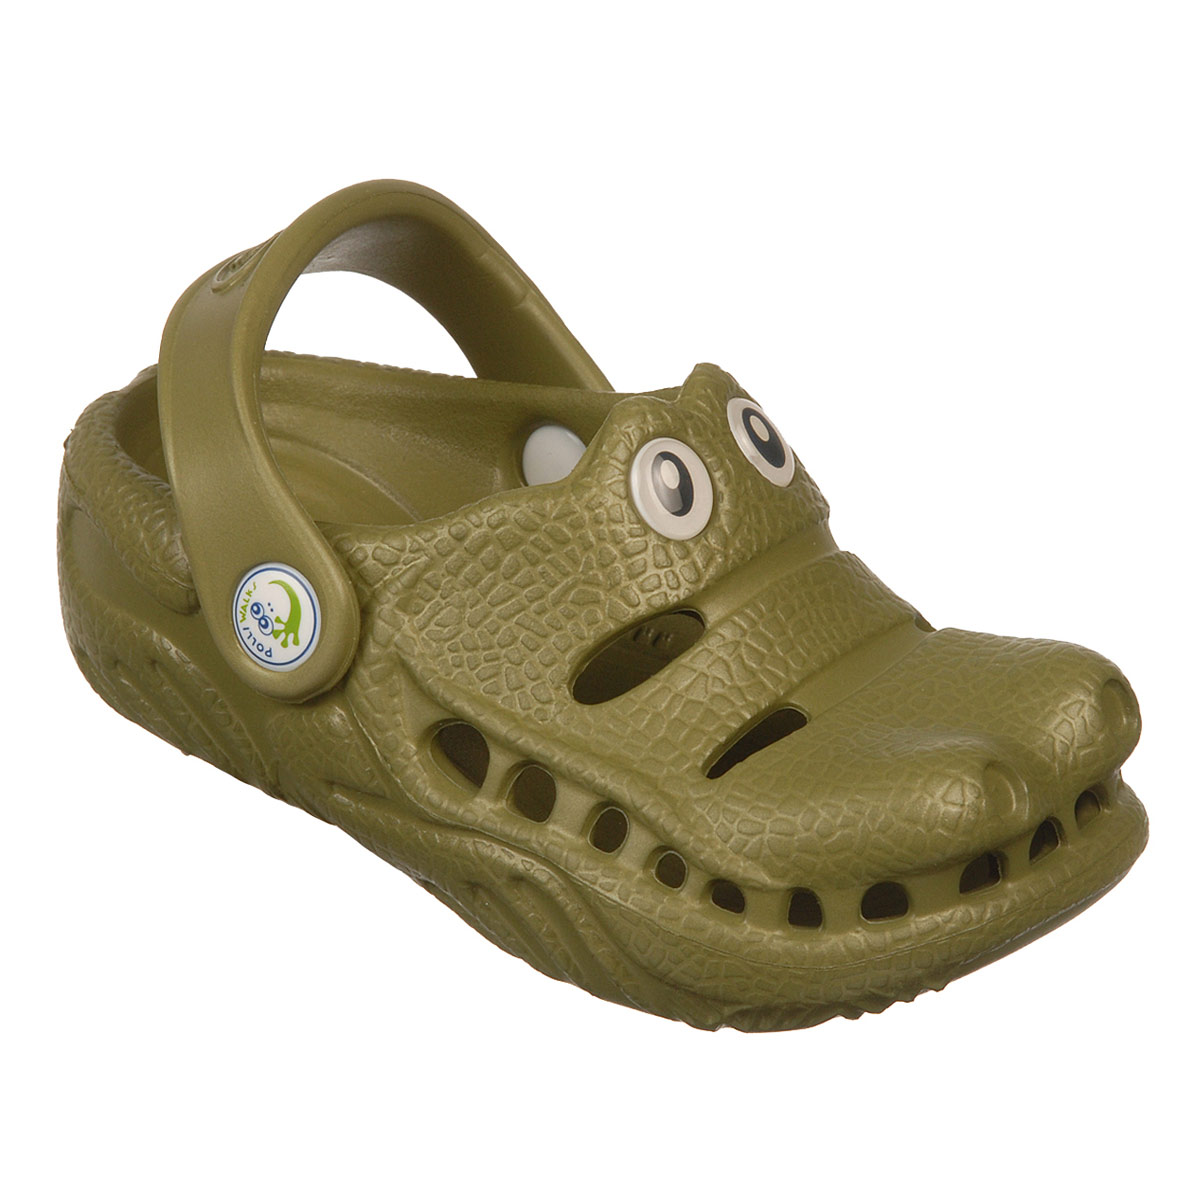 Polliwalks : Toddler shoes Gator ?Green # 8